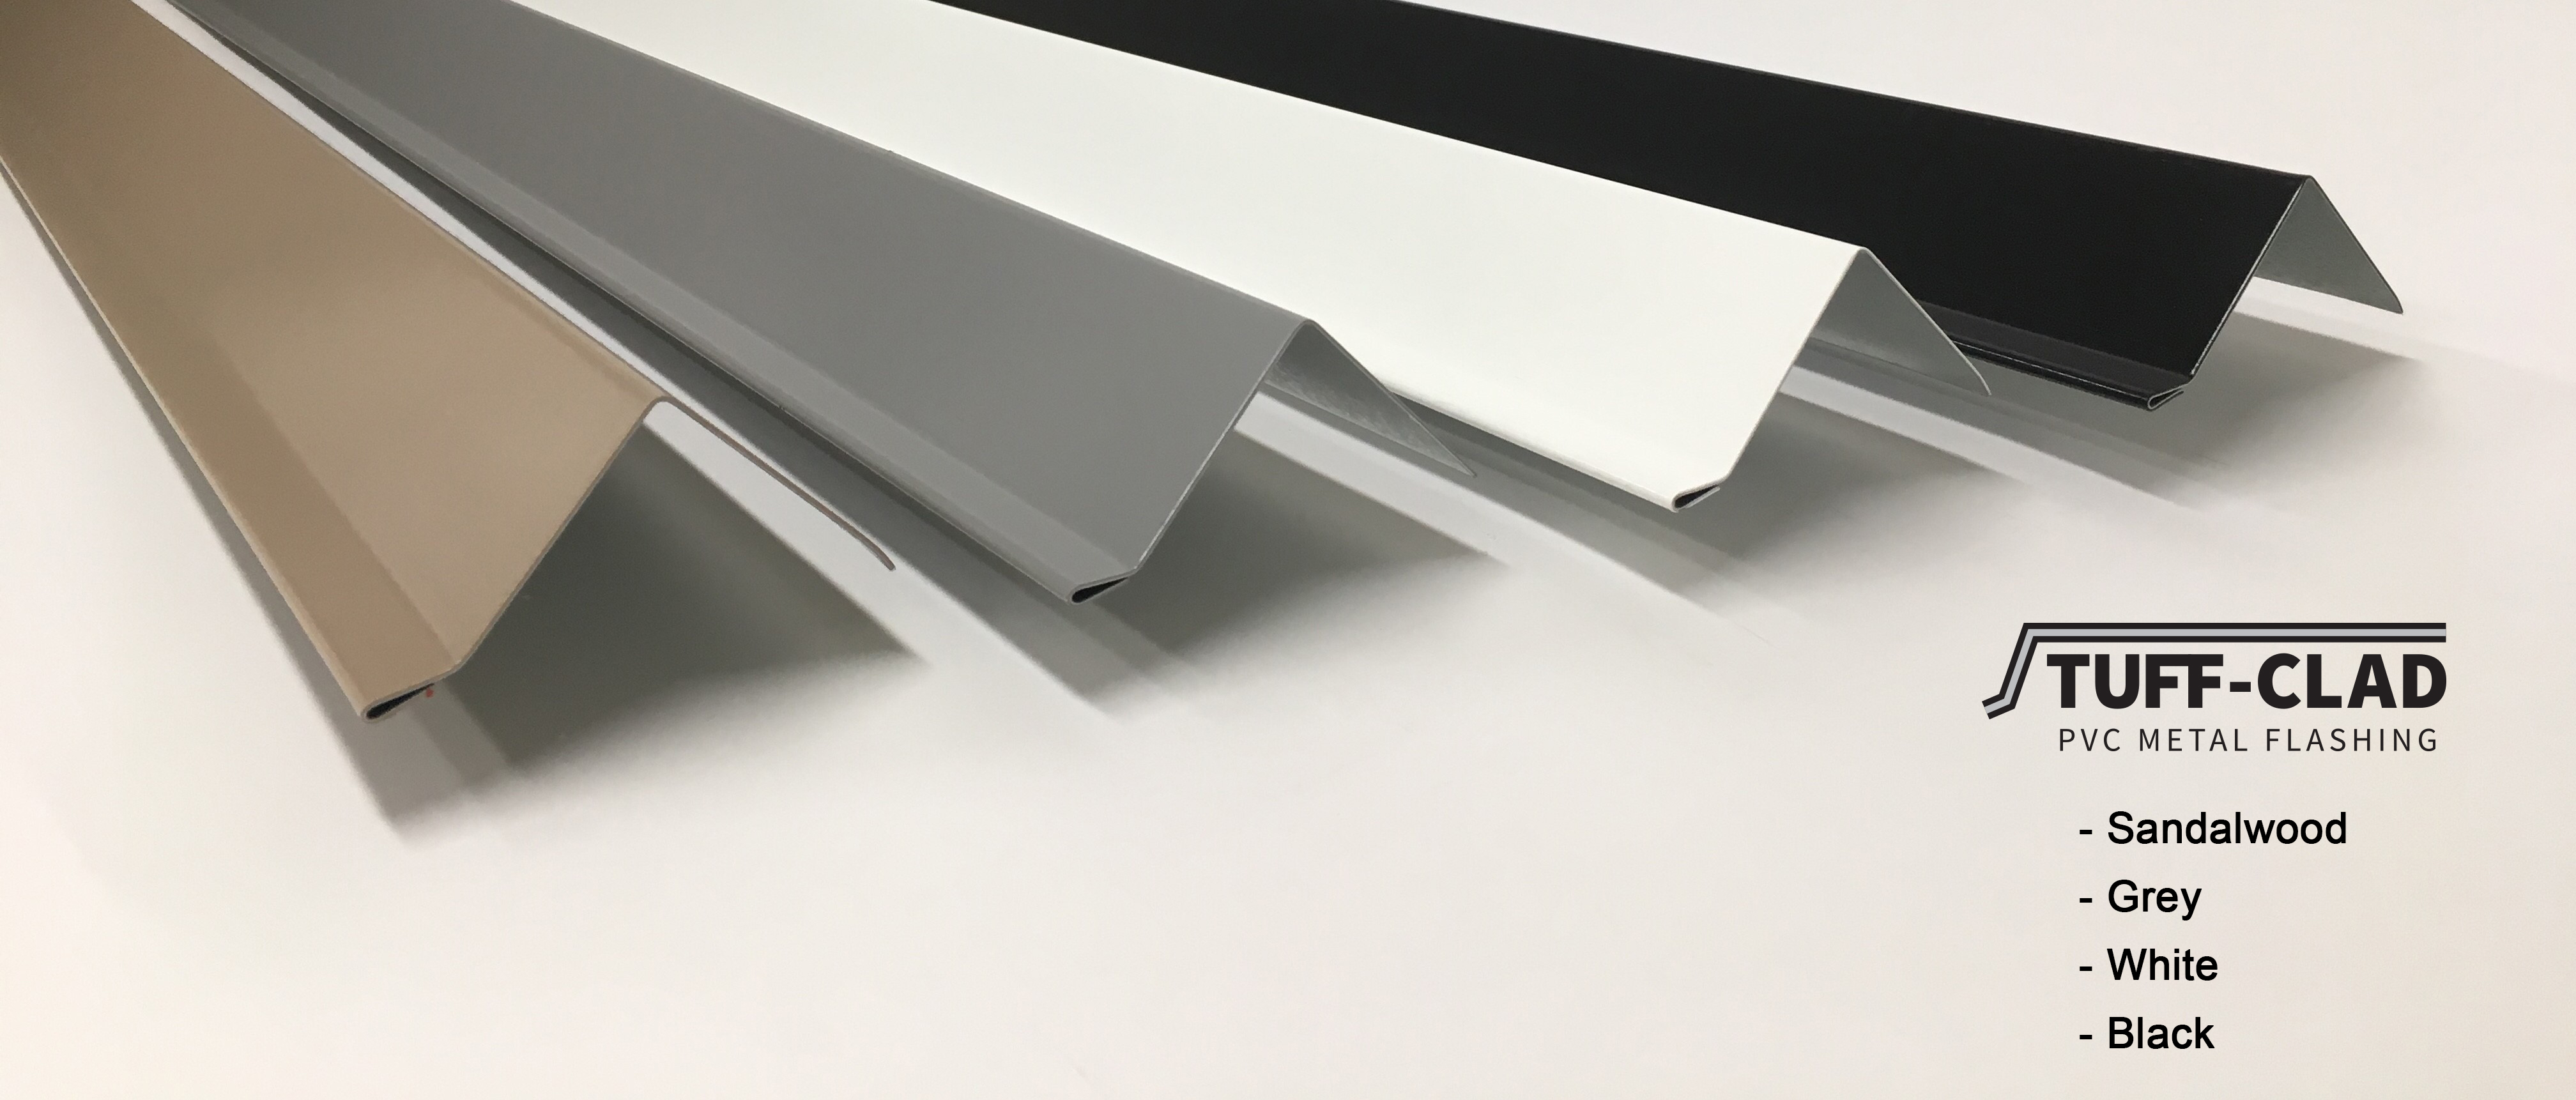 Samples of Tuff-Clad PVC metal flashing in Sandalwood, Grey, White, and Balack